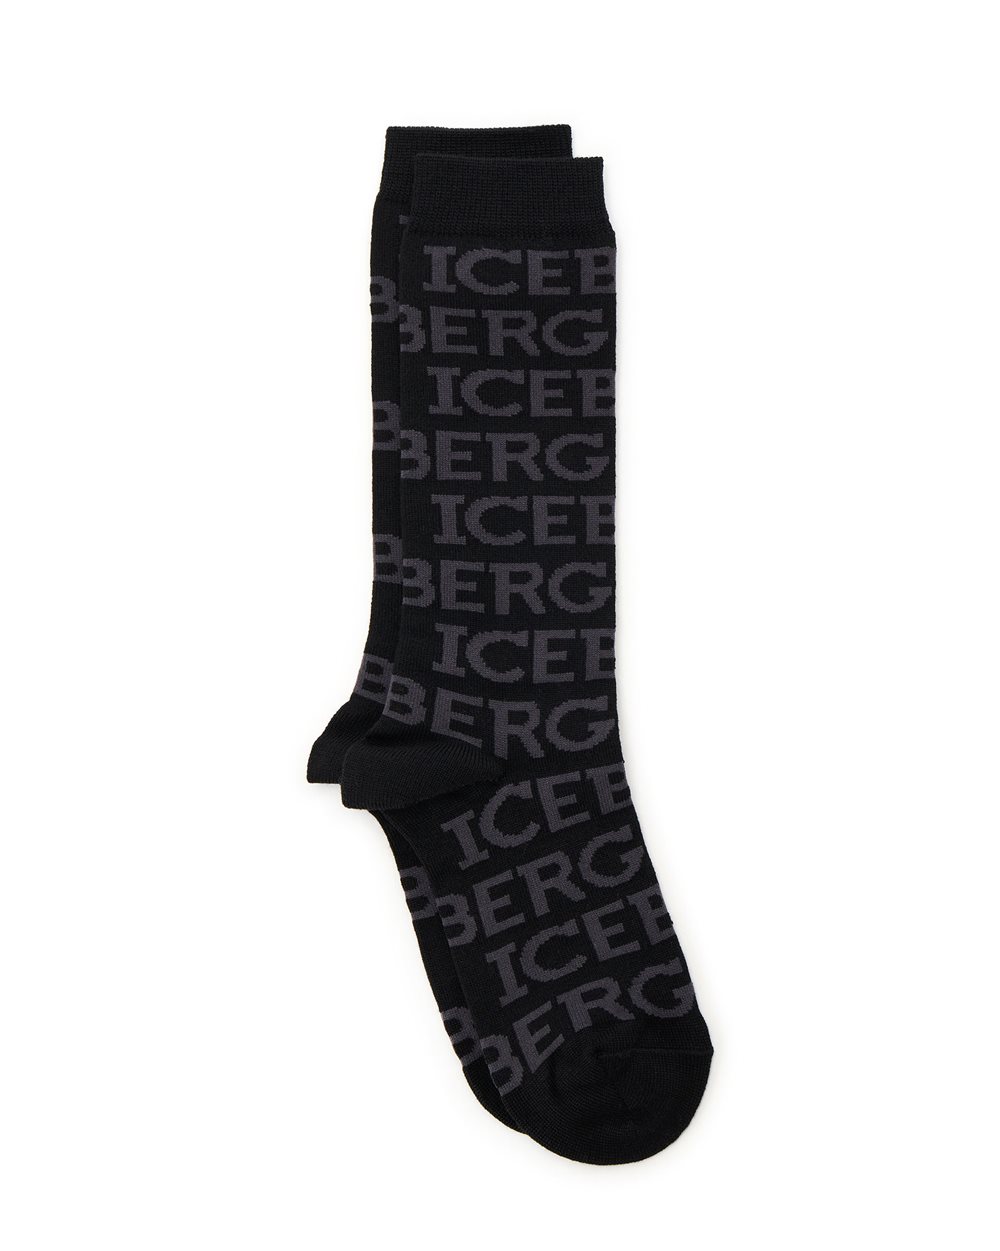 Socks with logo - socks | Iceberg - Official Website